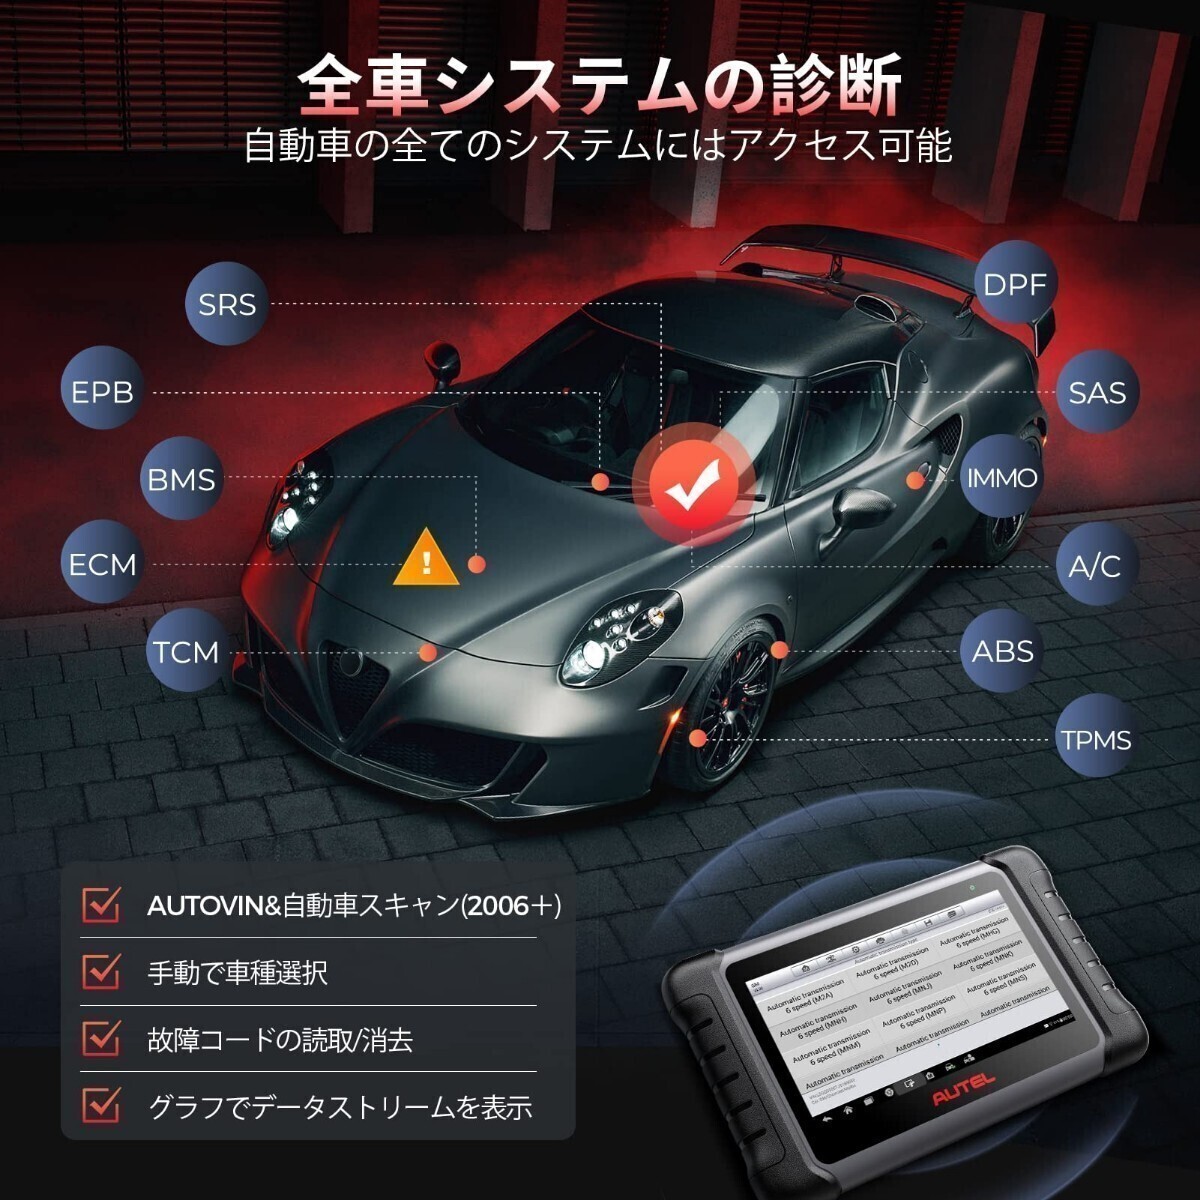 新品・日本語化済モデル 最新版 Autel MK808S OBD2 診断機 輸入車 国産車 軽自動車 ハイブリッド スキャンツール アクティブテスト DPF再生